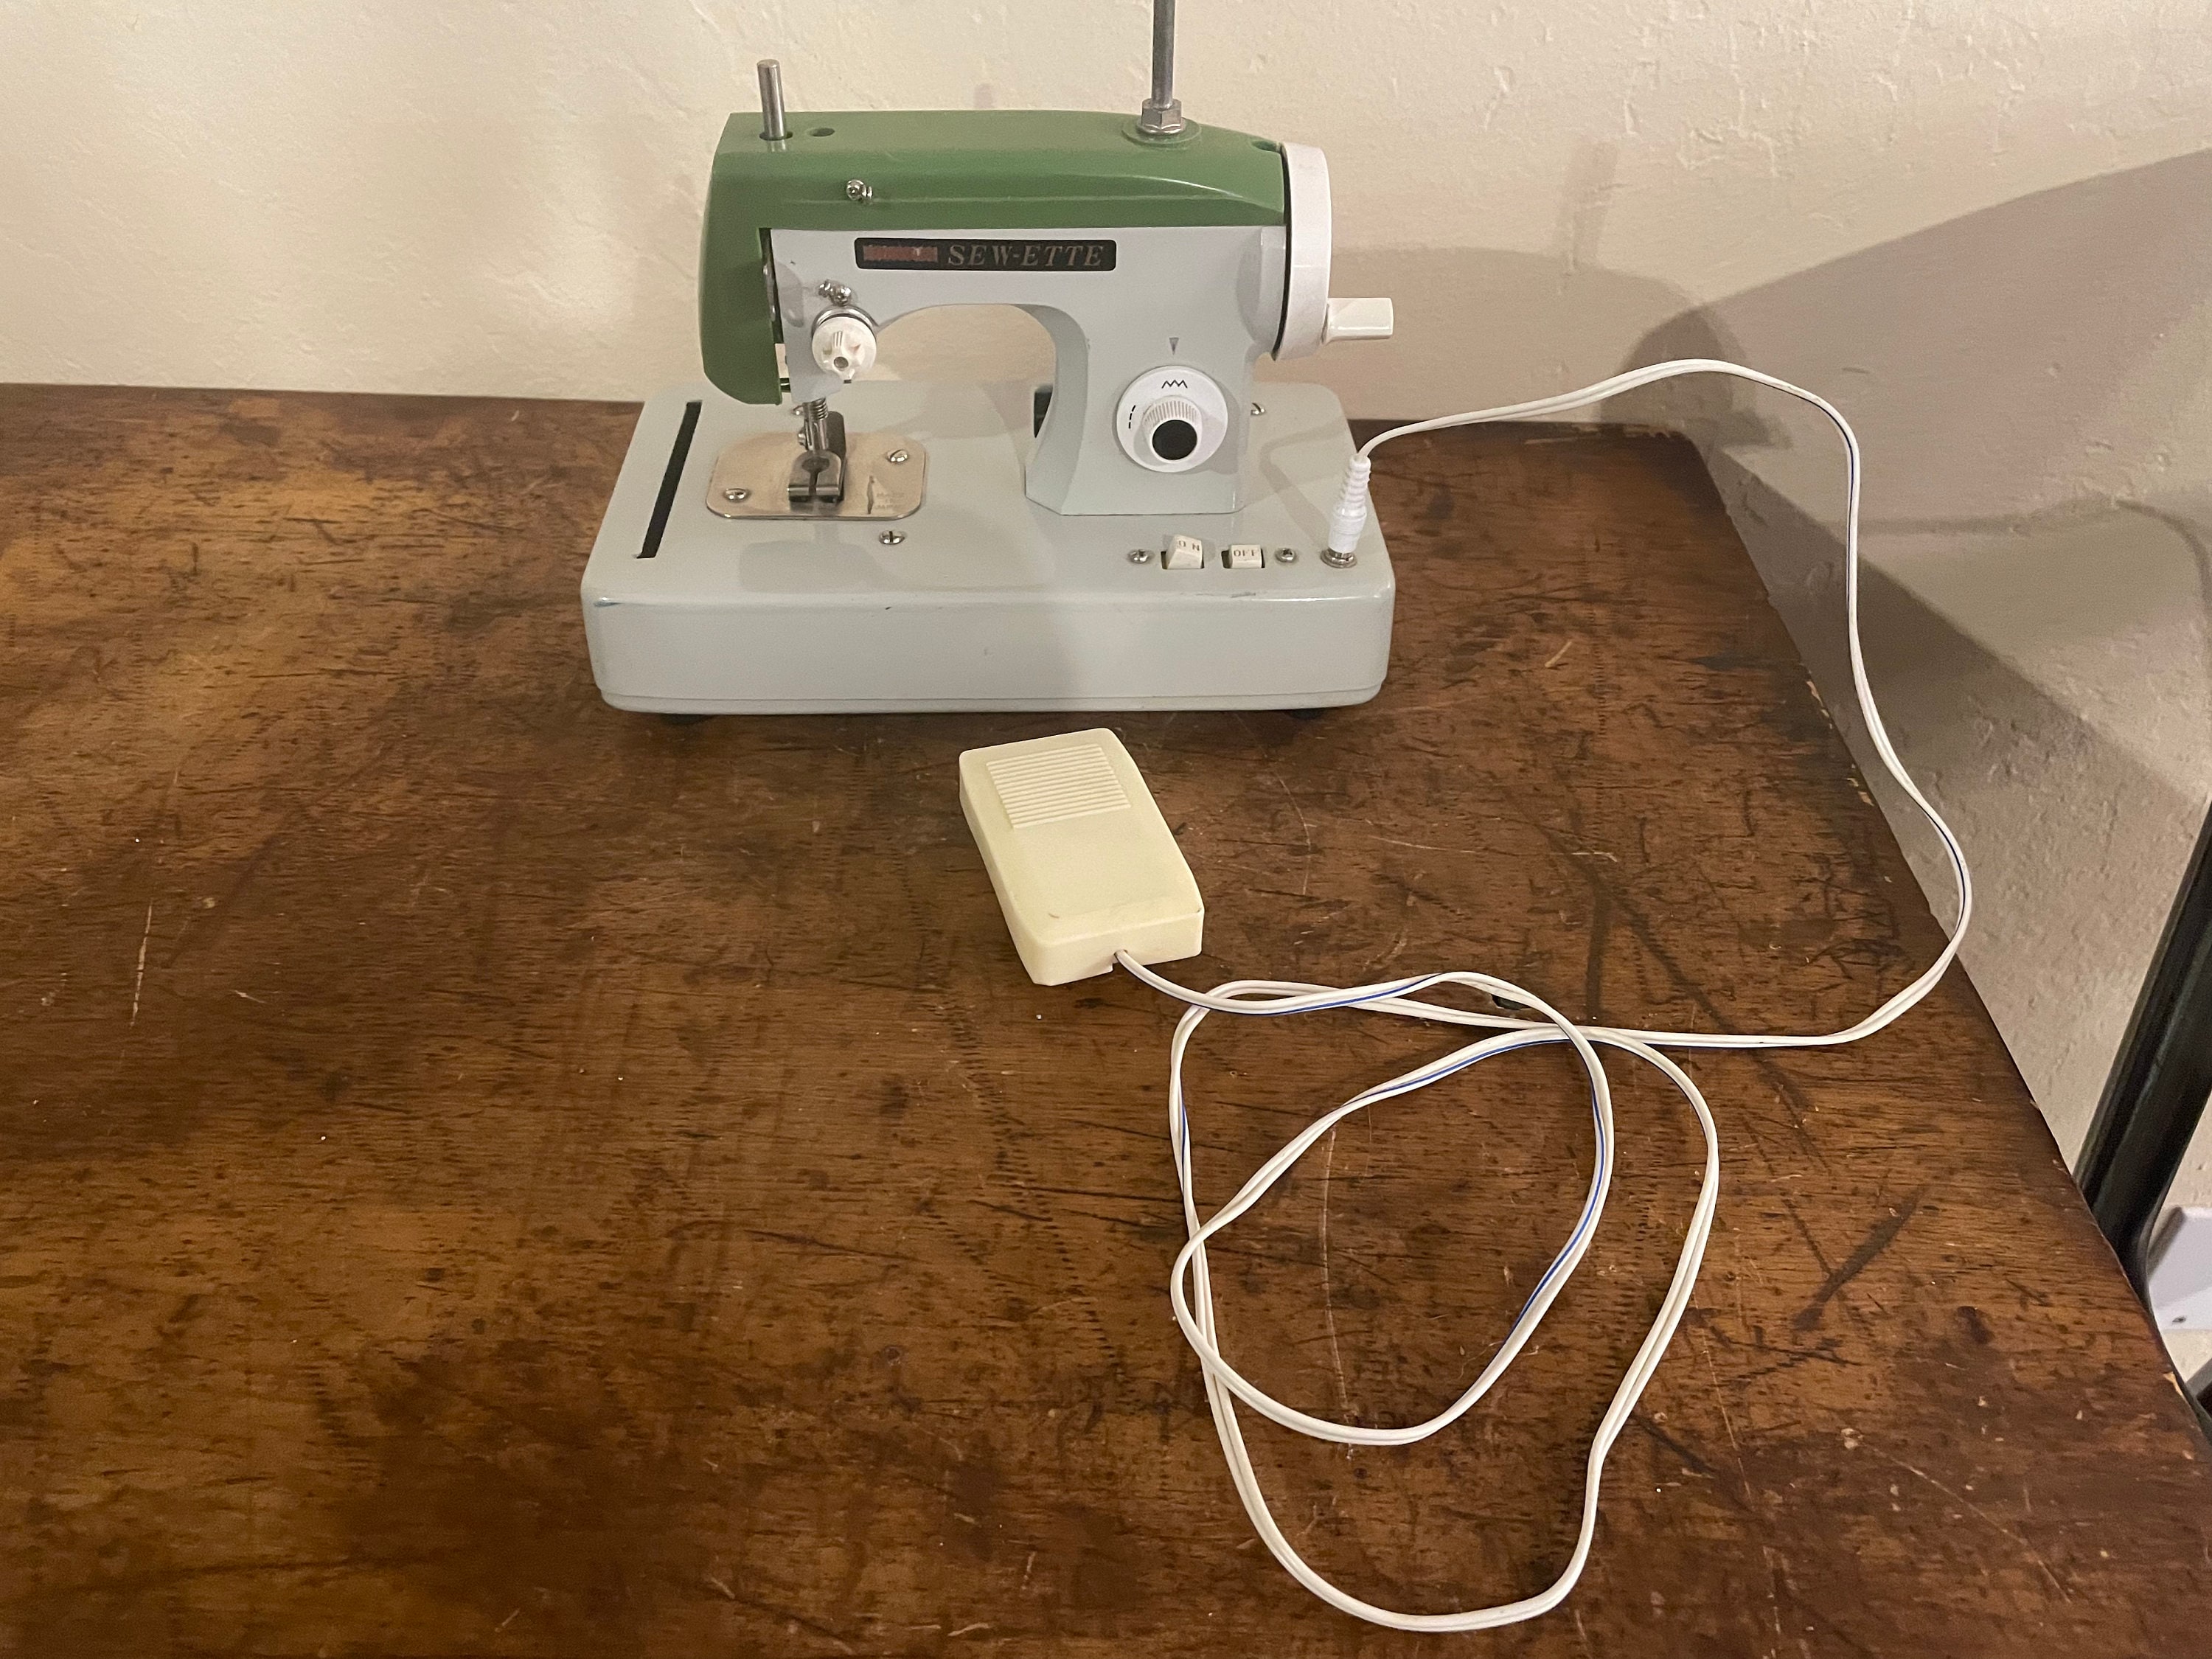  Sewing Machine : Electronics